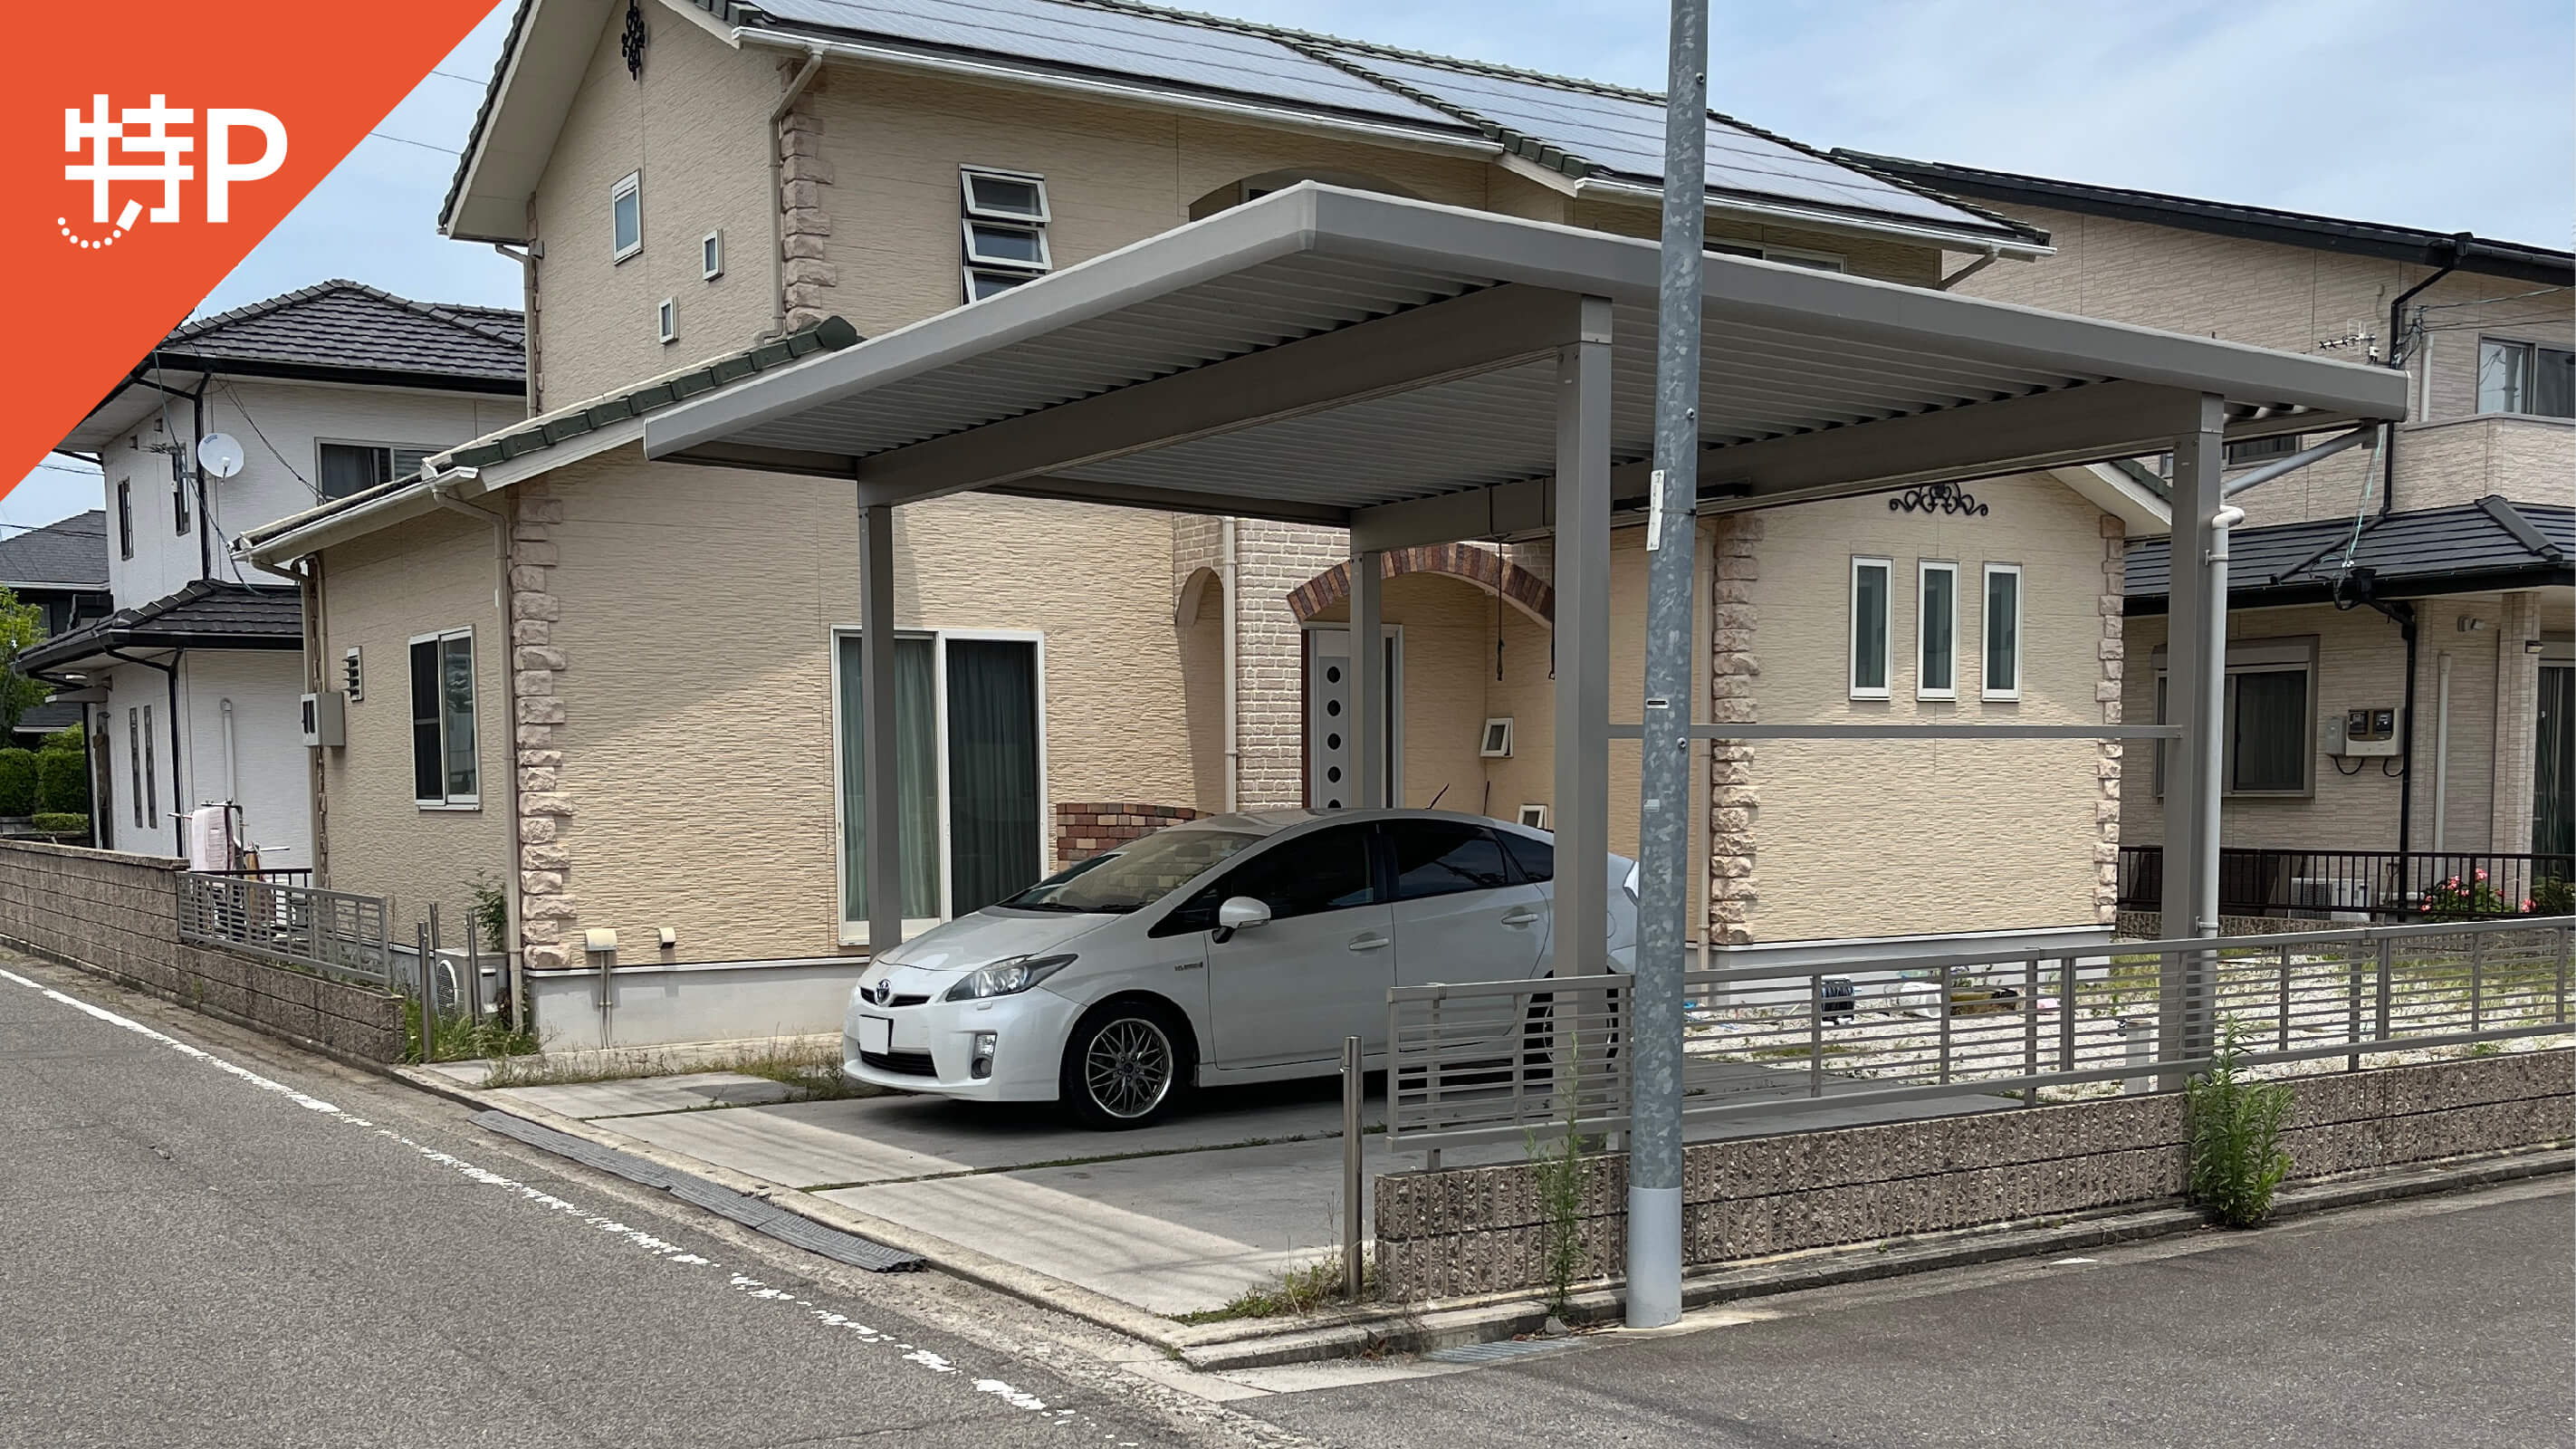 【予約制】特P 飯田町828-9駐車場の画像1